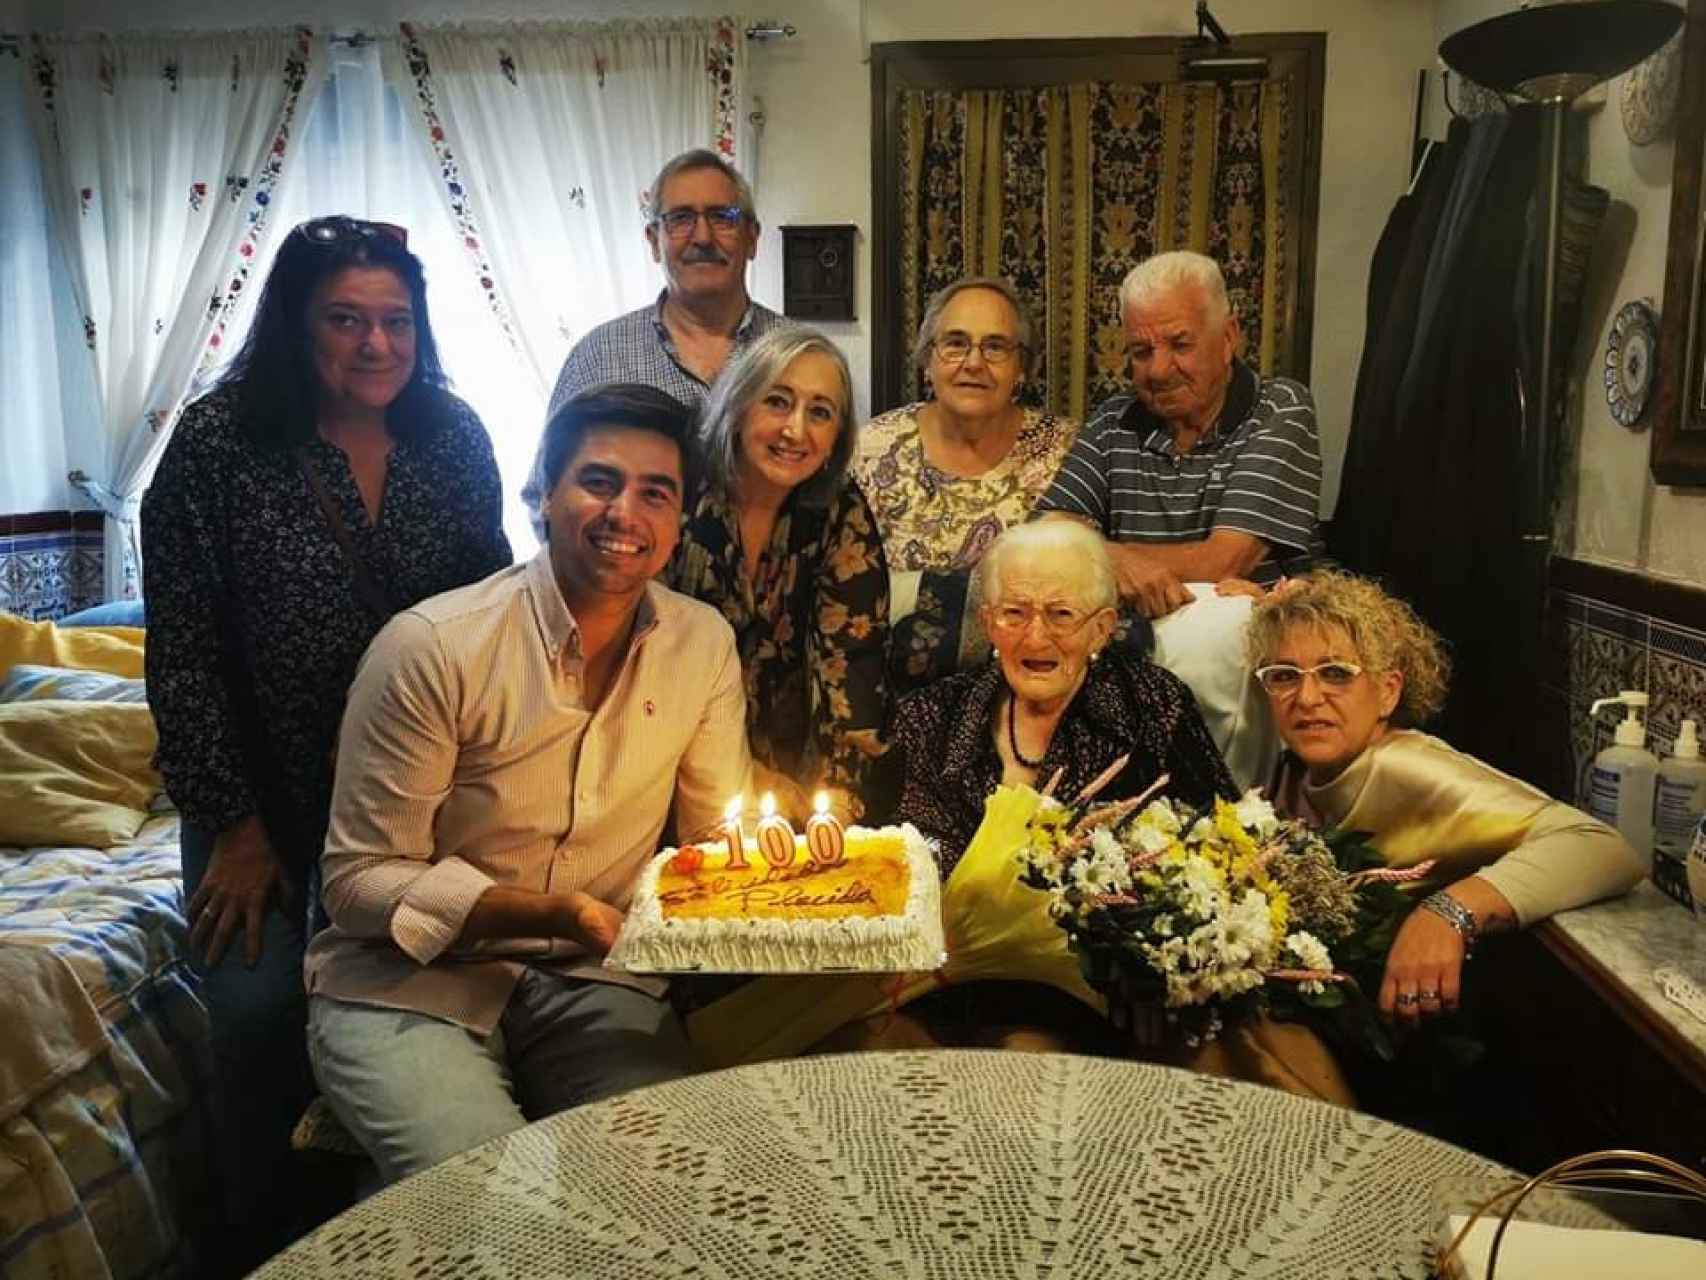 La vecina centenaria de Candeleda, Plácida Feital, celebra su 100 cumpleaños con algunos de sus hijos y nietos.